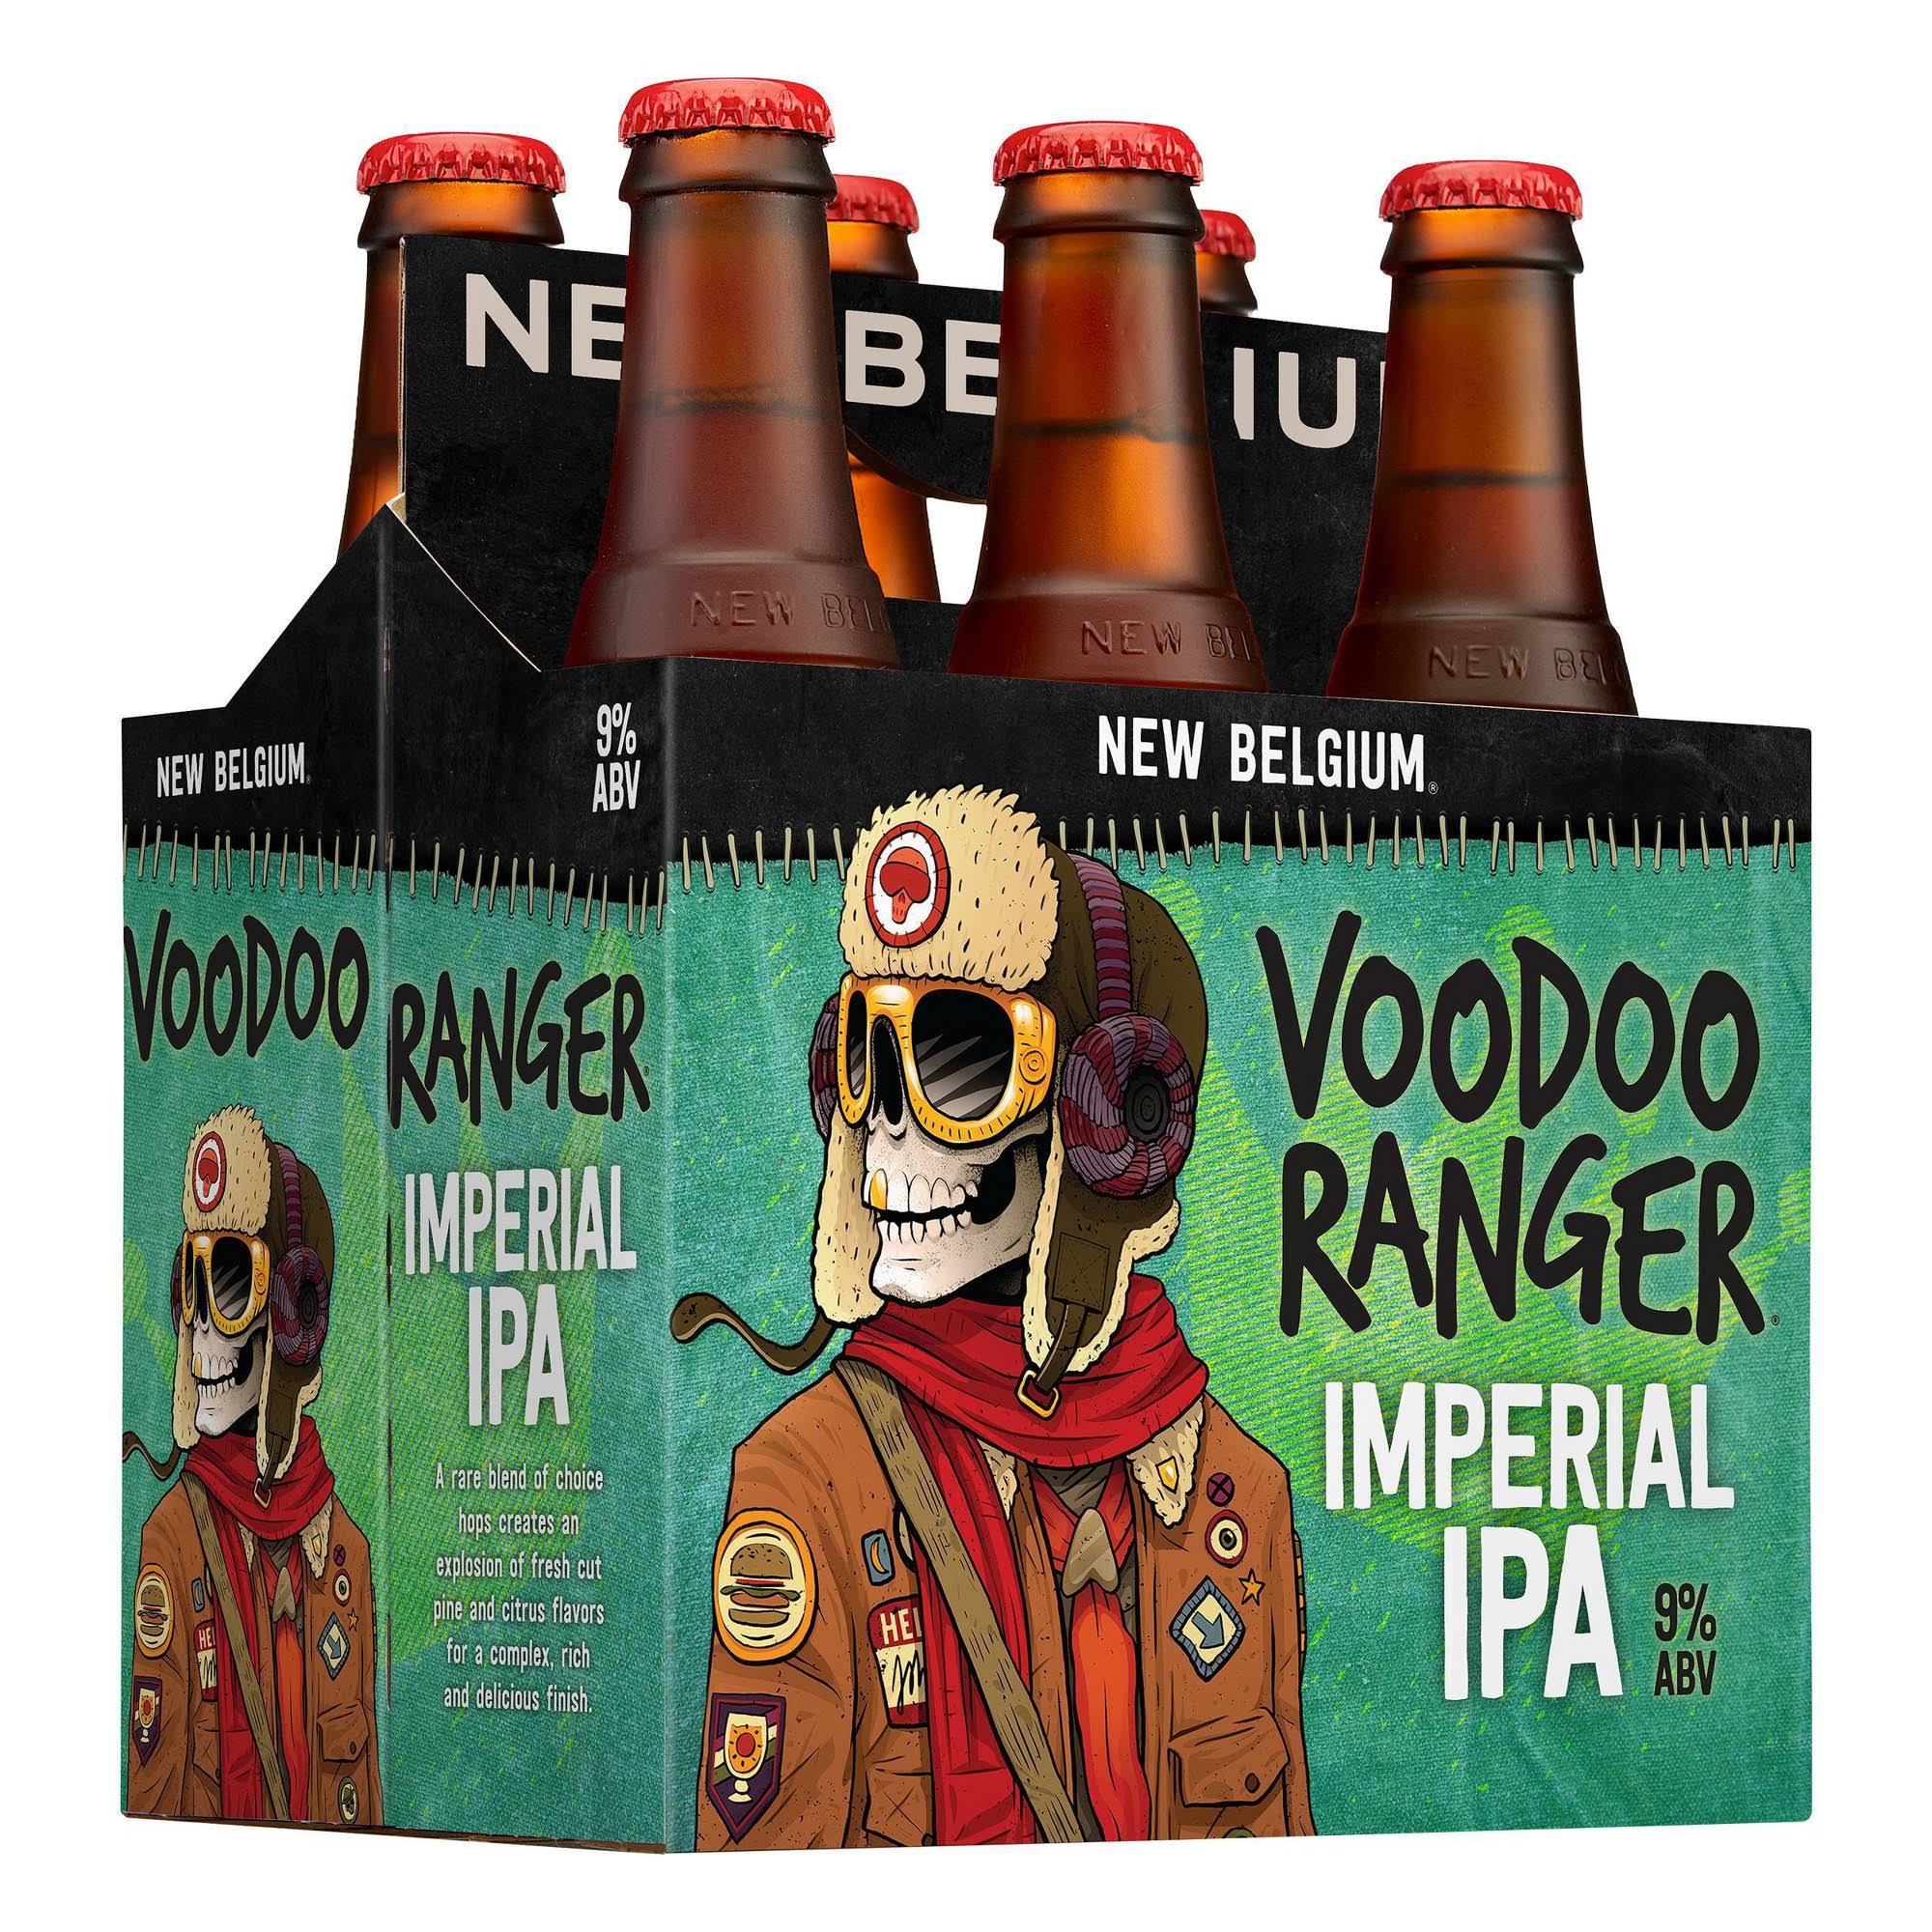 New Belgium Voodoo Ranger Beer, Imperial IPA - 6 bottles